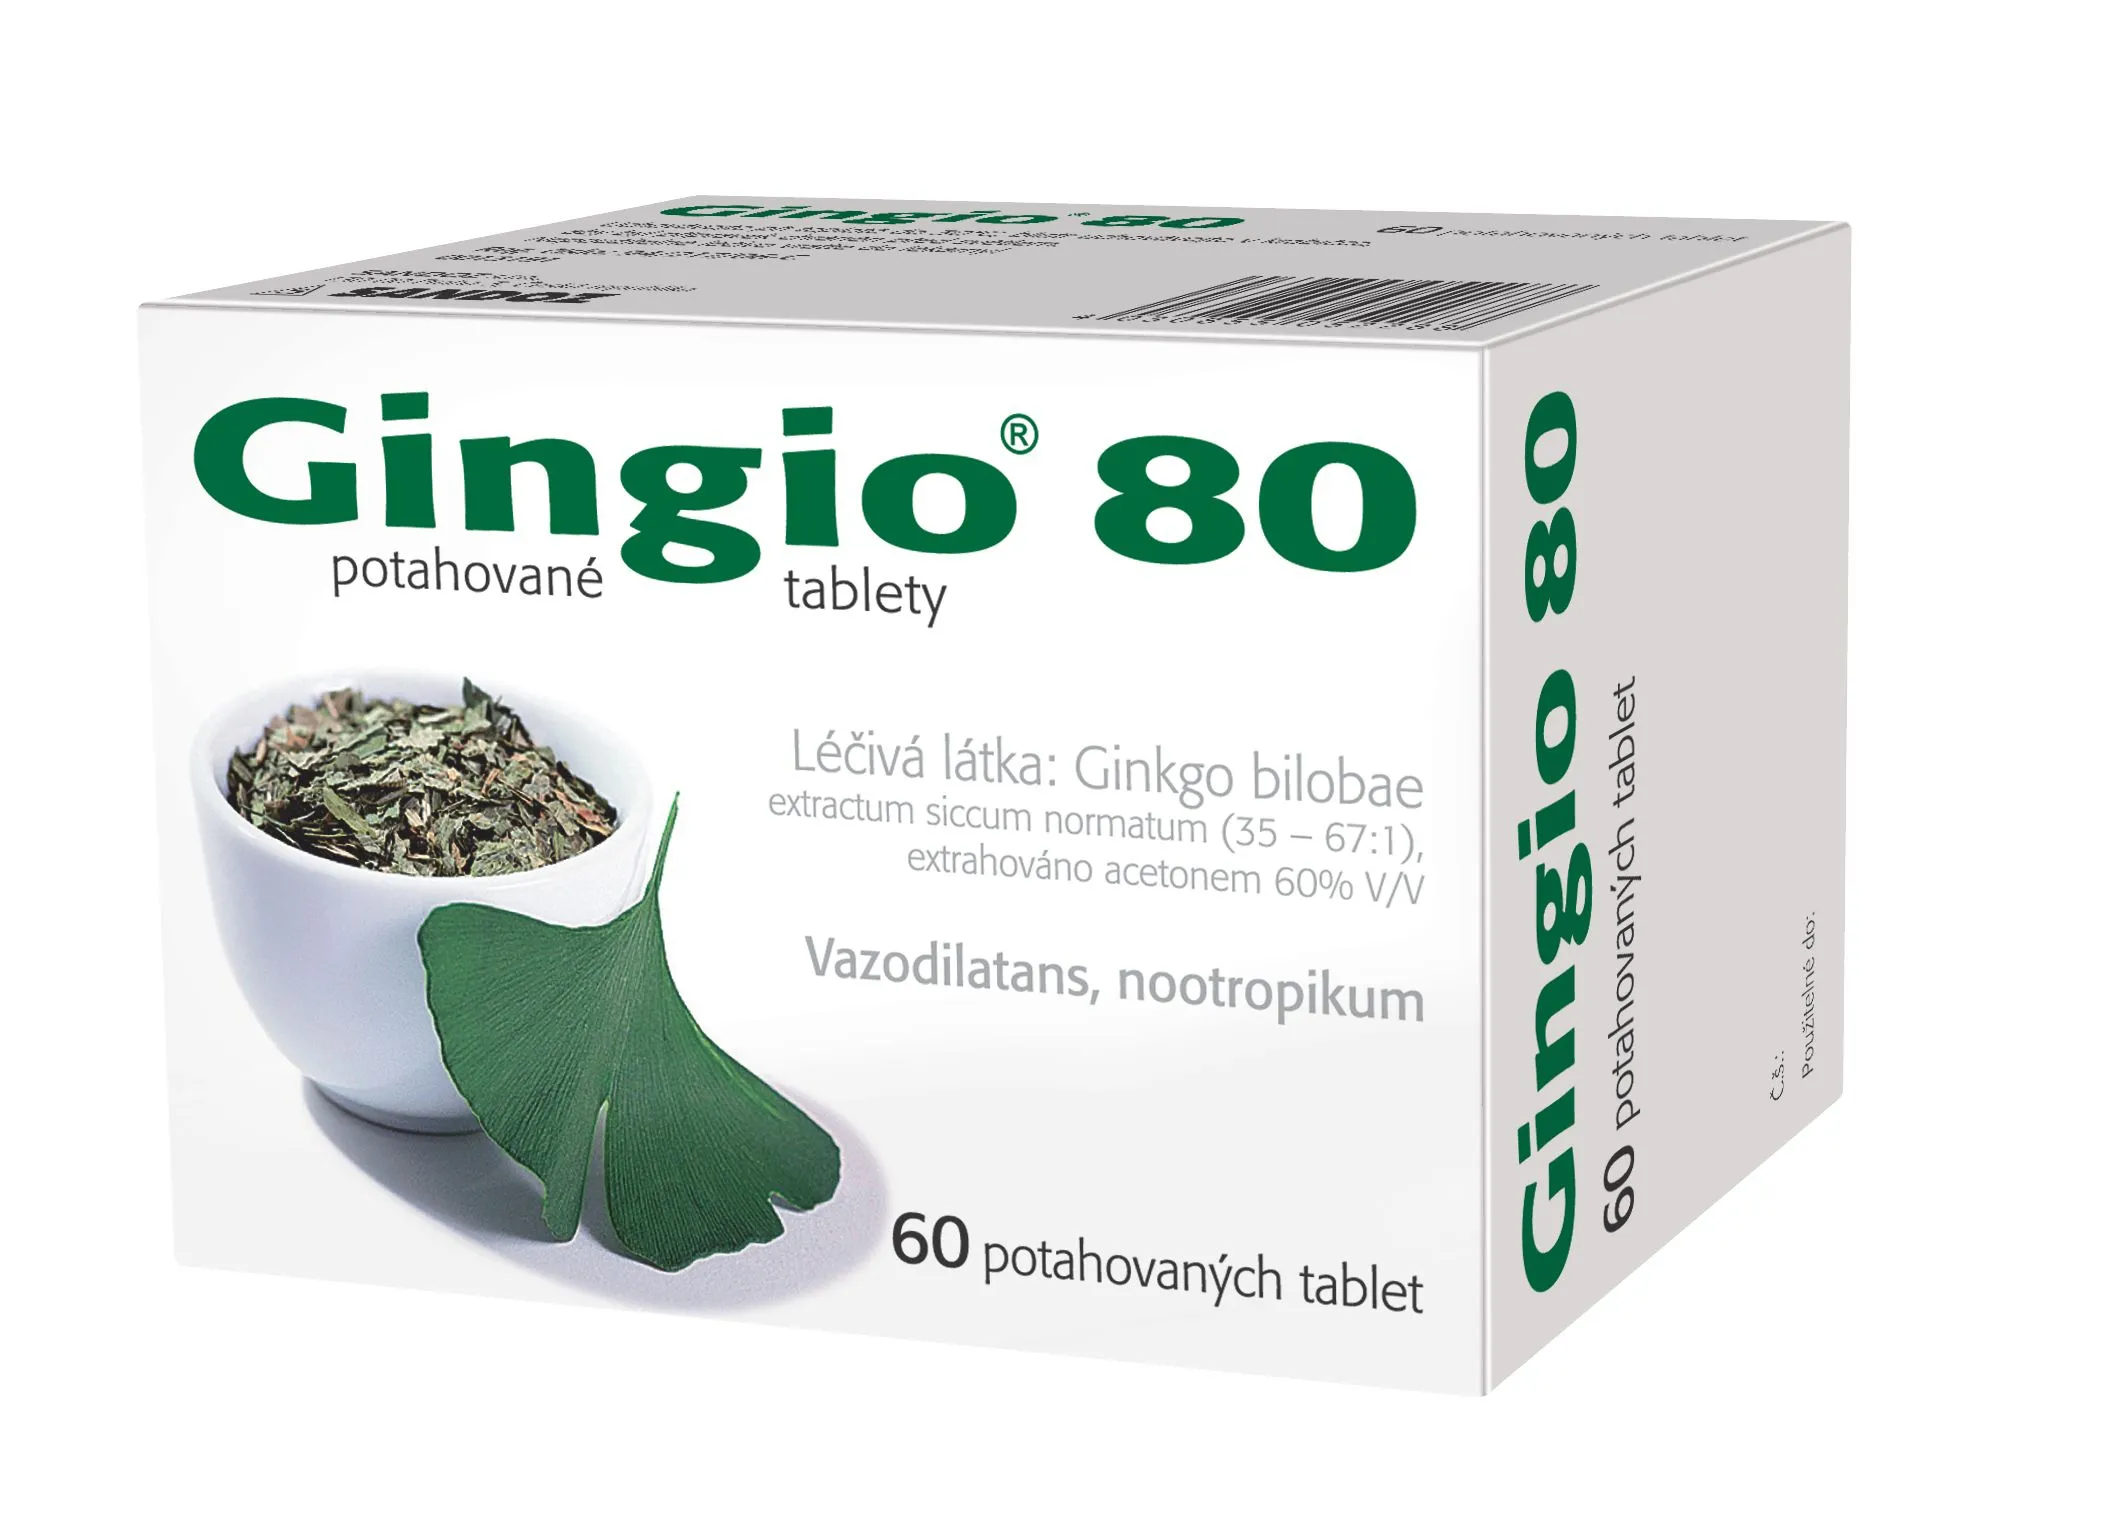 Gingio 80